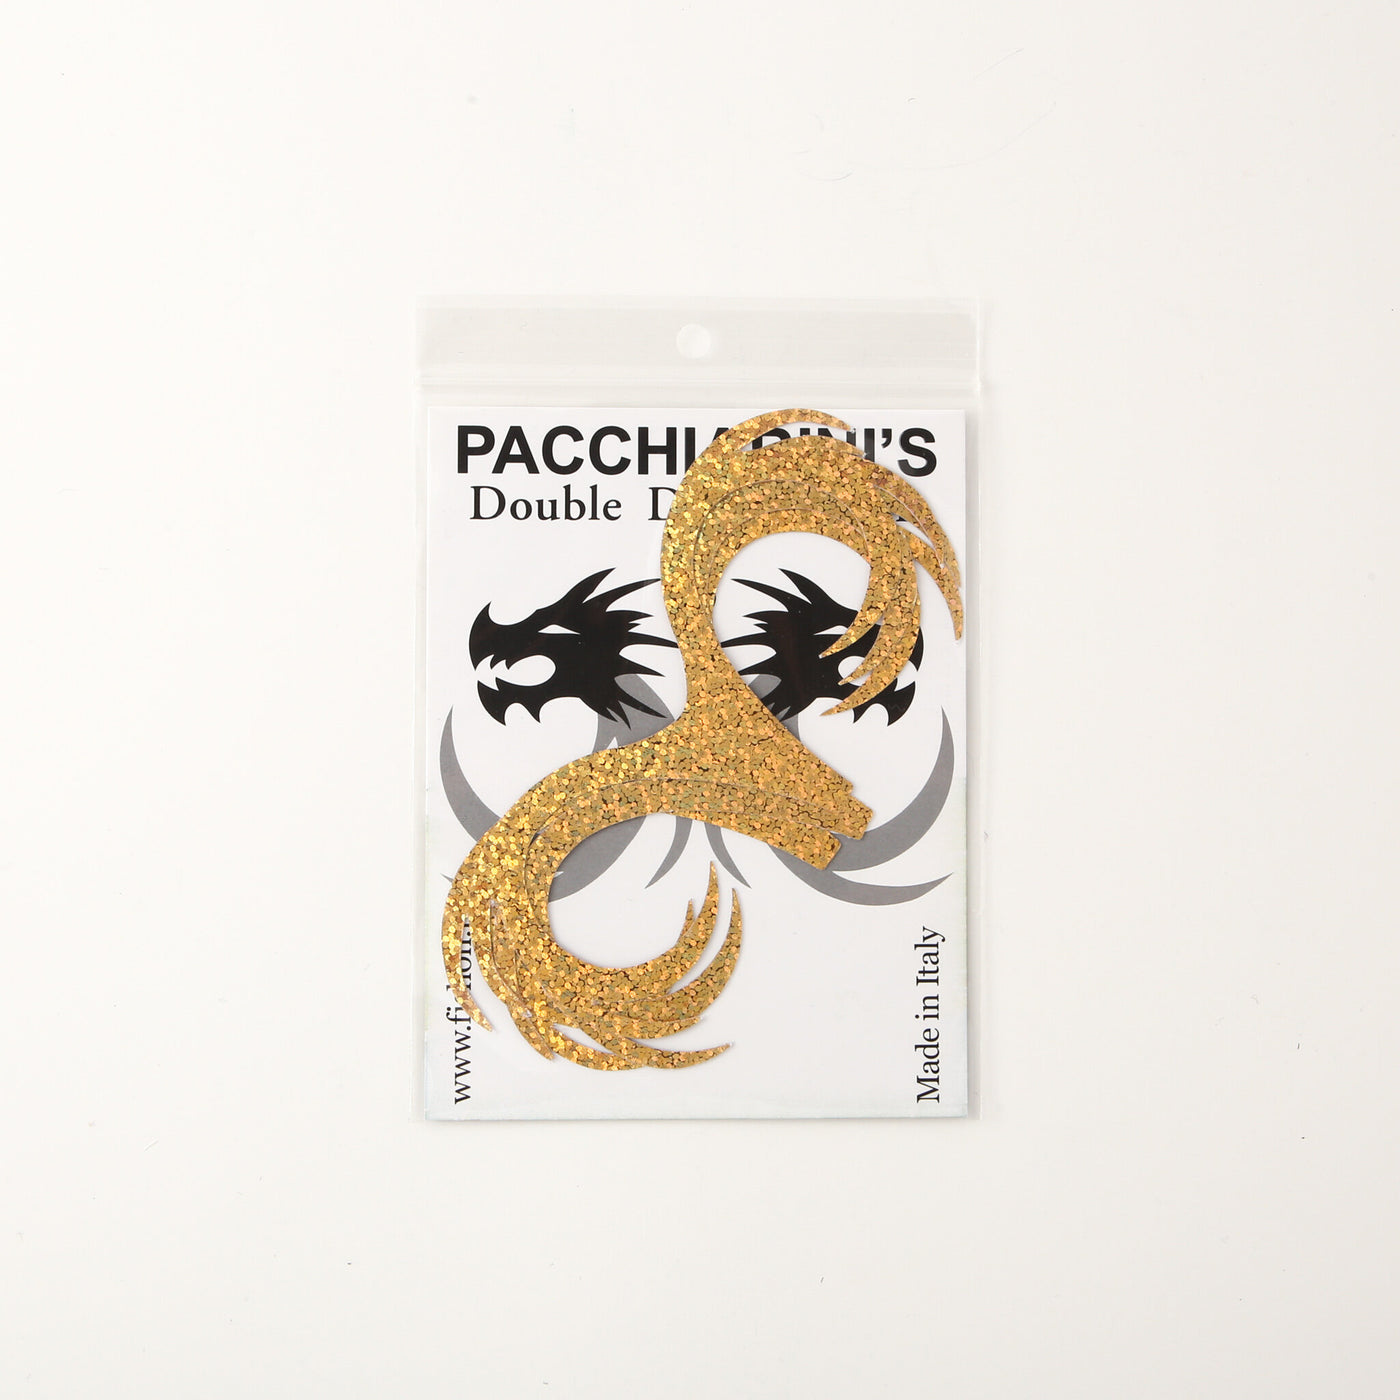 La doble cola de dragón de Pacchiarini